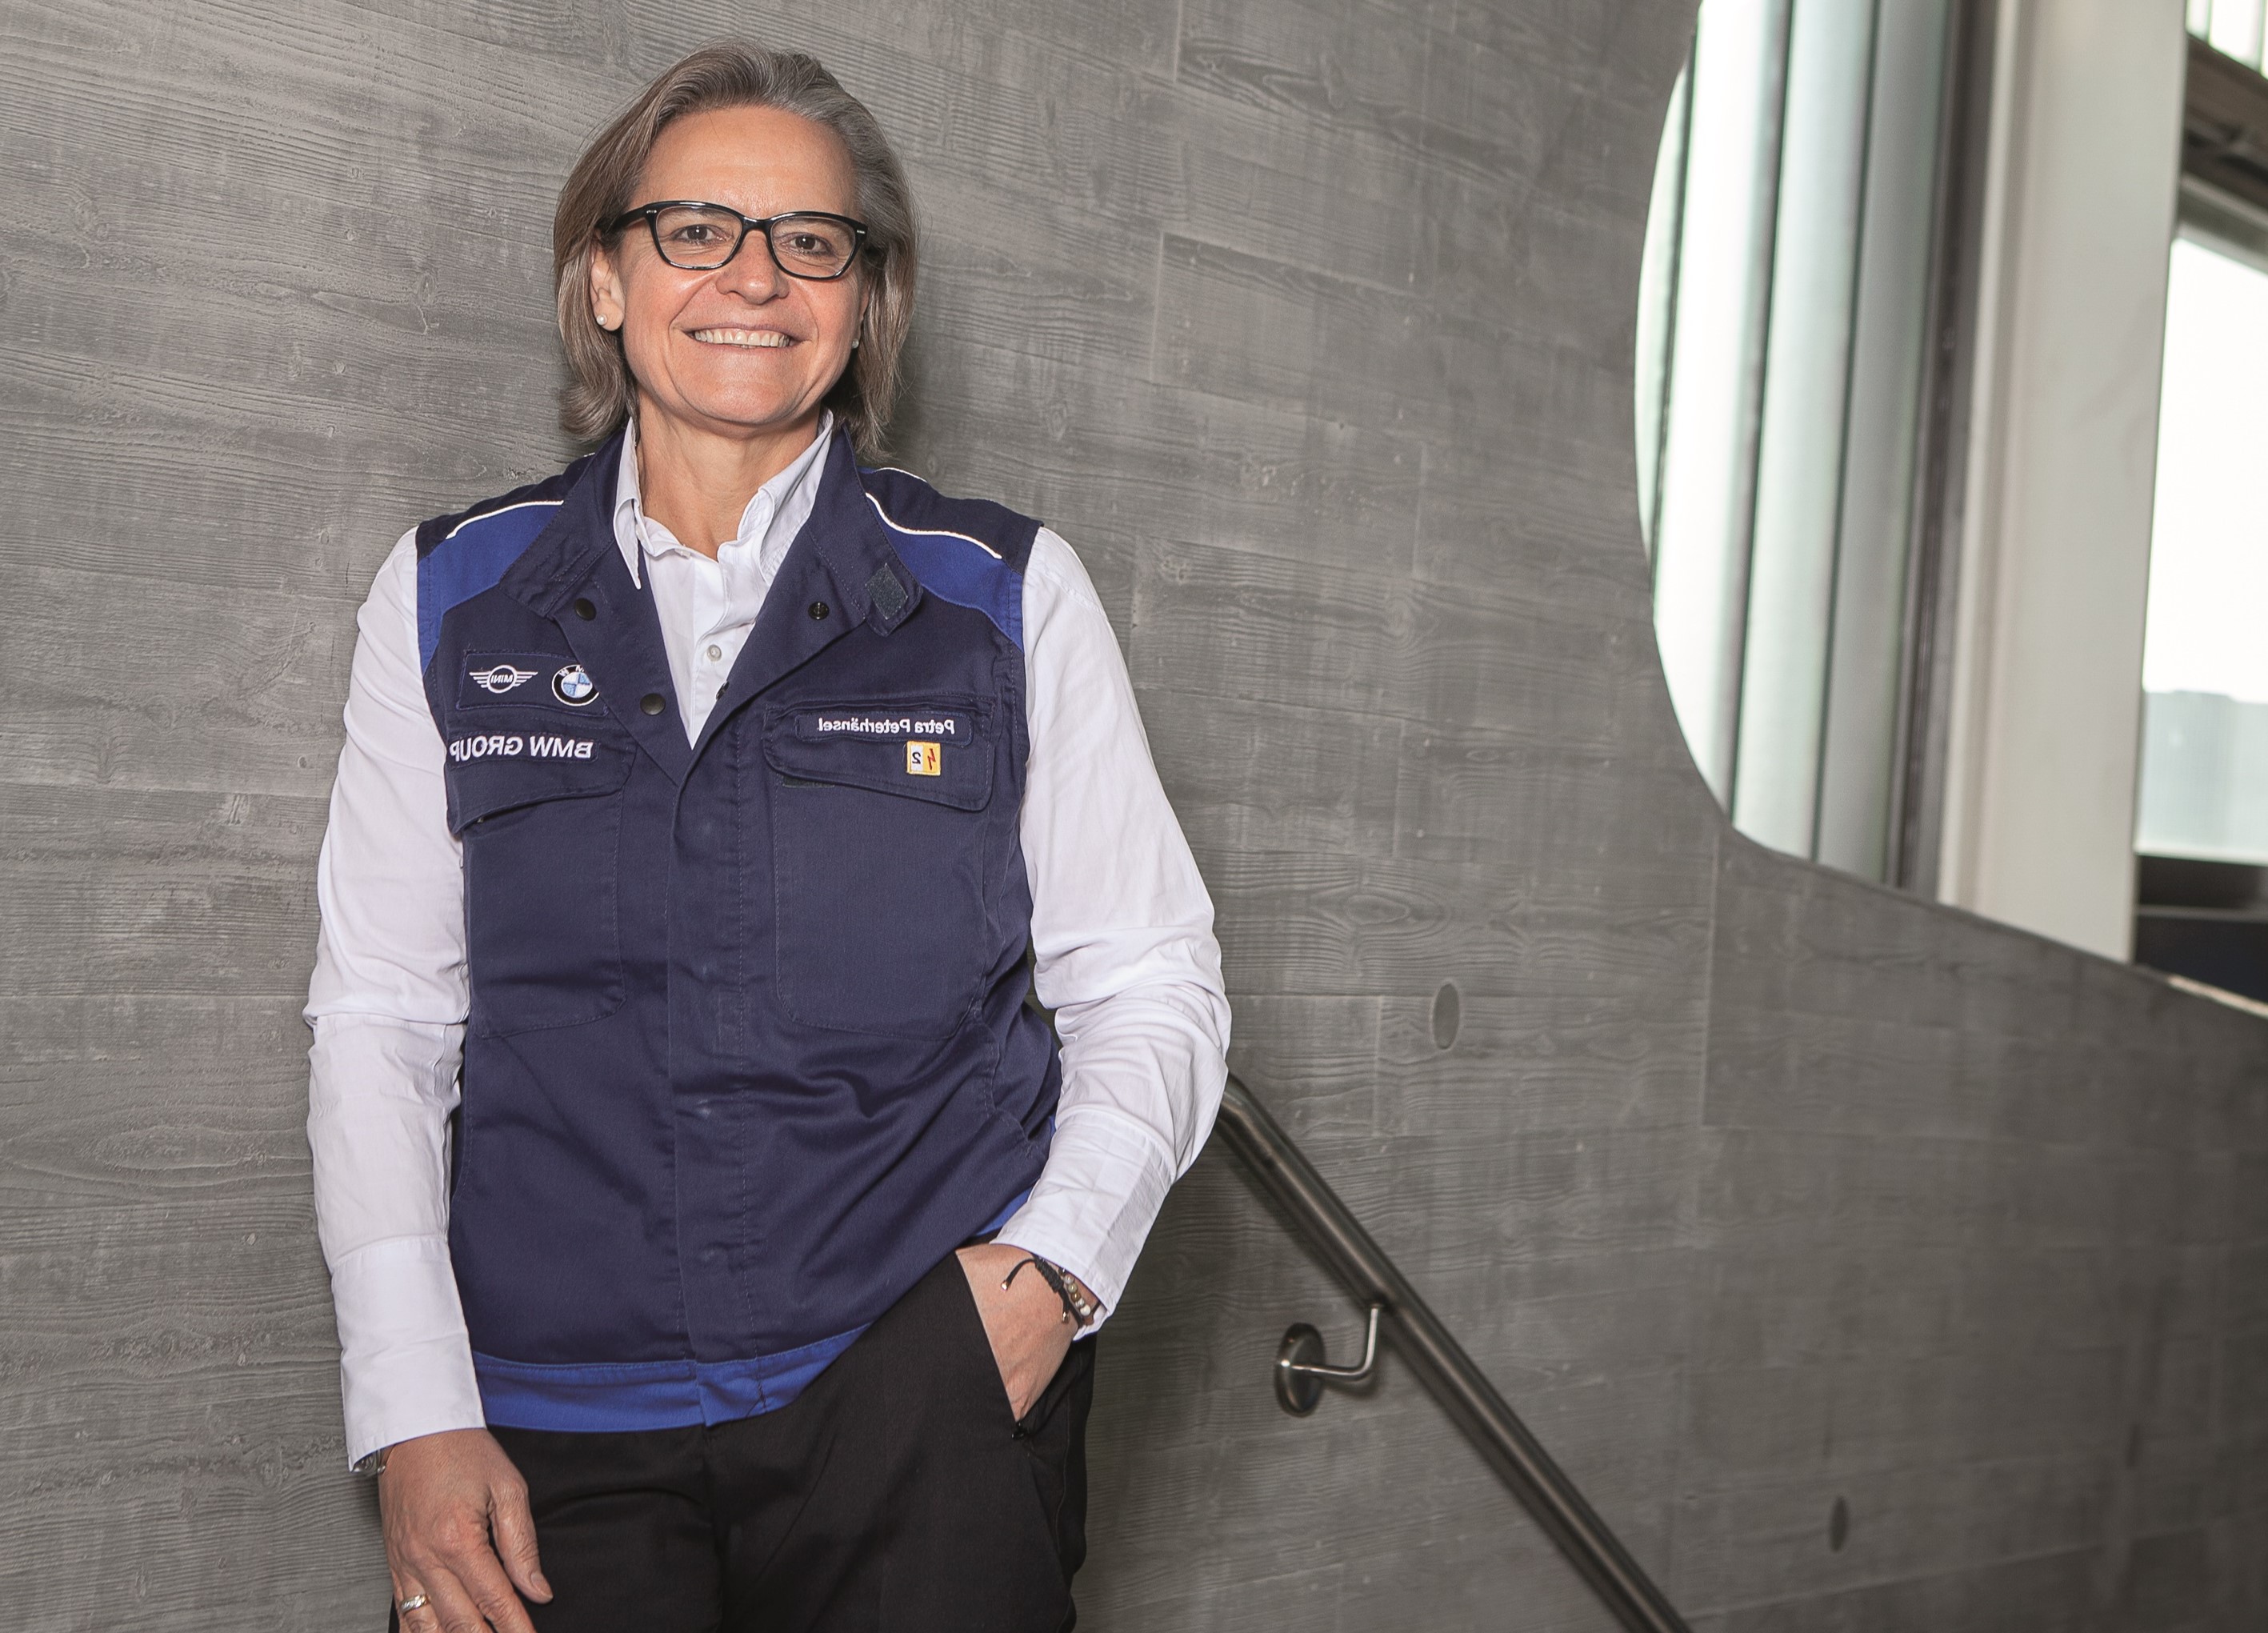   »Ich habe einen Facharbeiter gemacht und dann Karriere« | Petra Peterhänsel leitet das BMW-Werk in Leipzig – eigentlich wollte sie aber Kindergärtnerin werden   